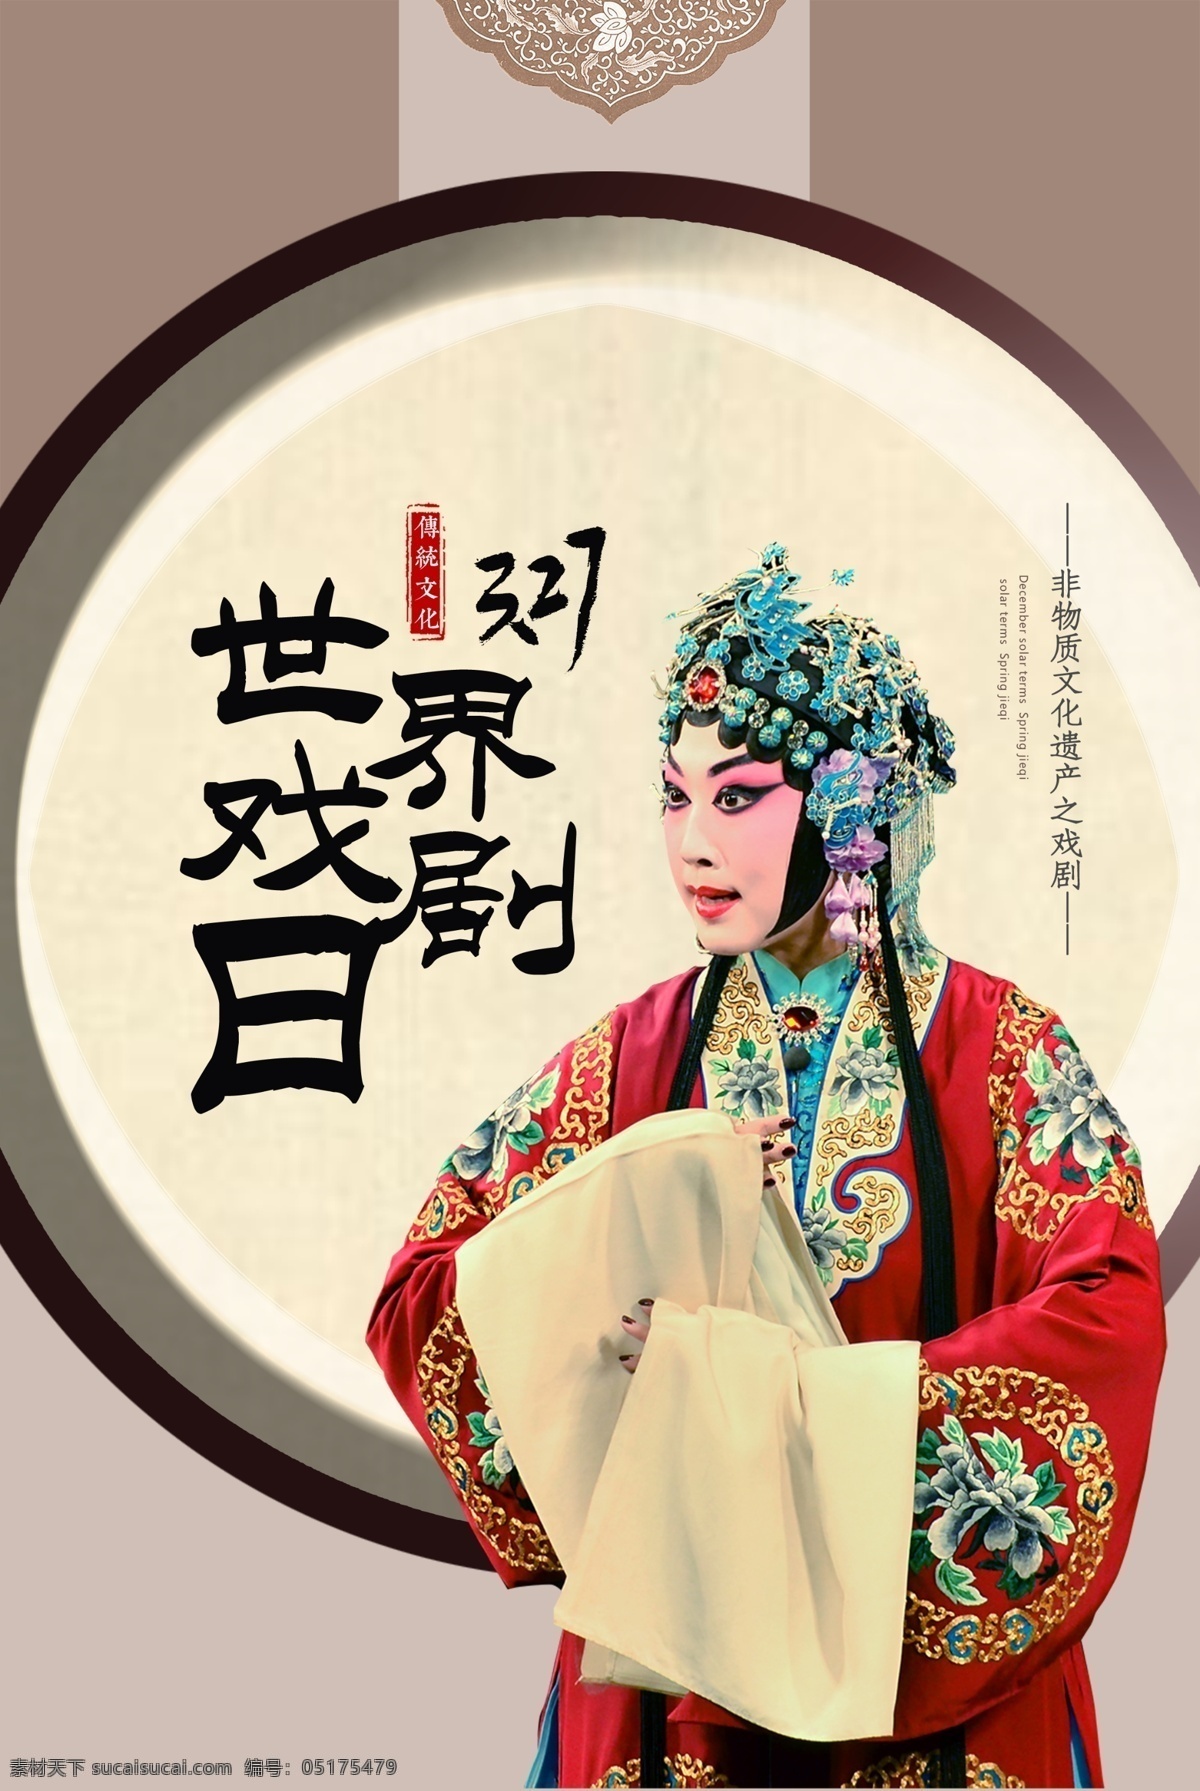 世界 戏剧 日 海报 戏曲 京剧 传统文化 传统戏剧 世界戏剧日 戏剧日宣传